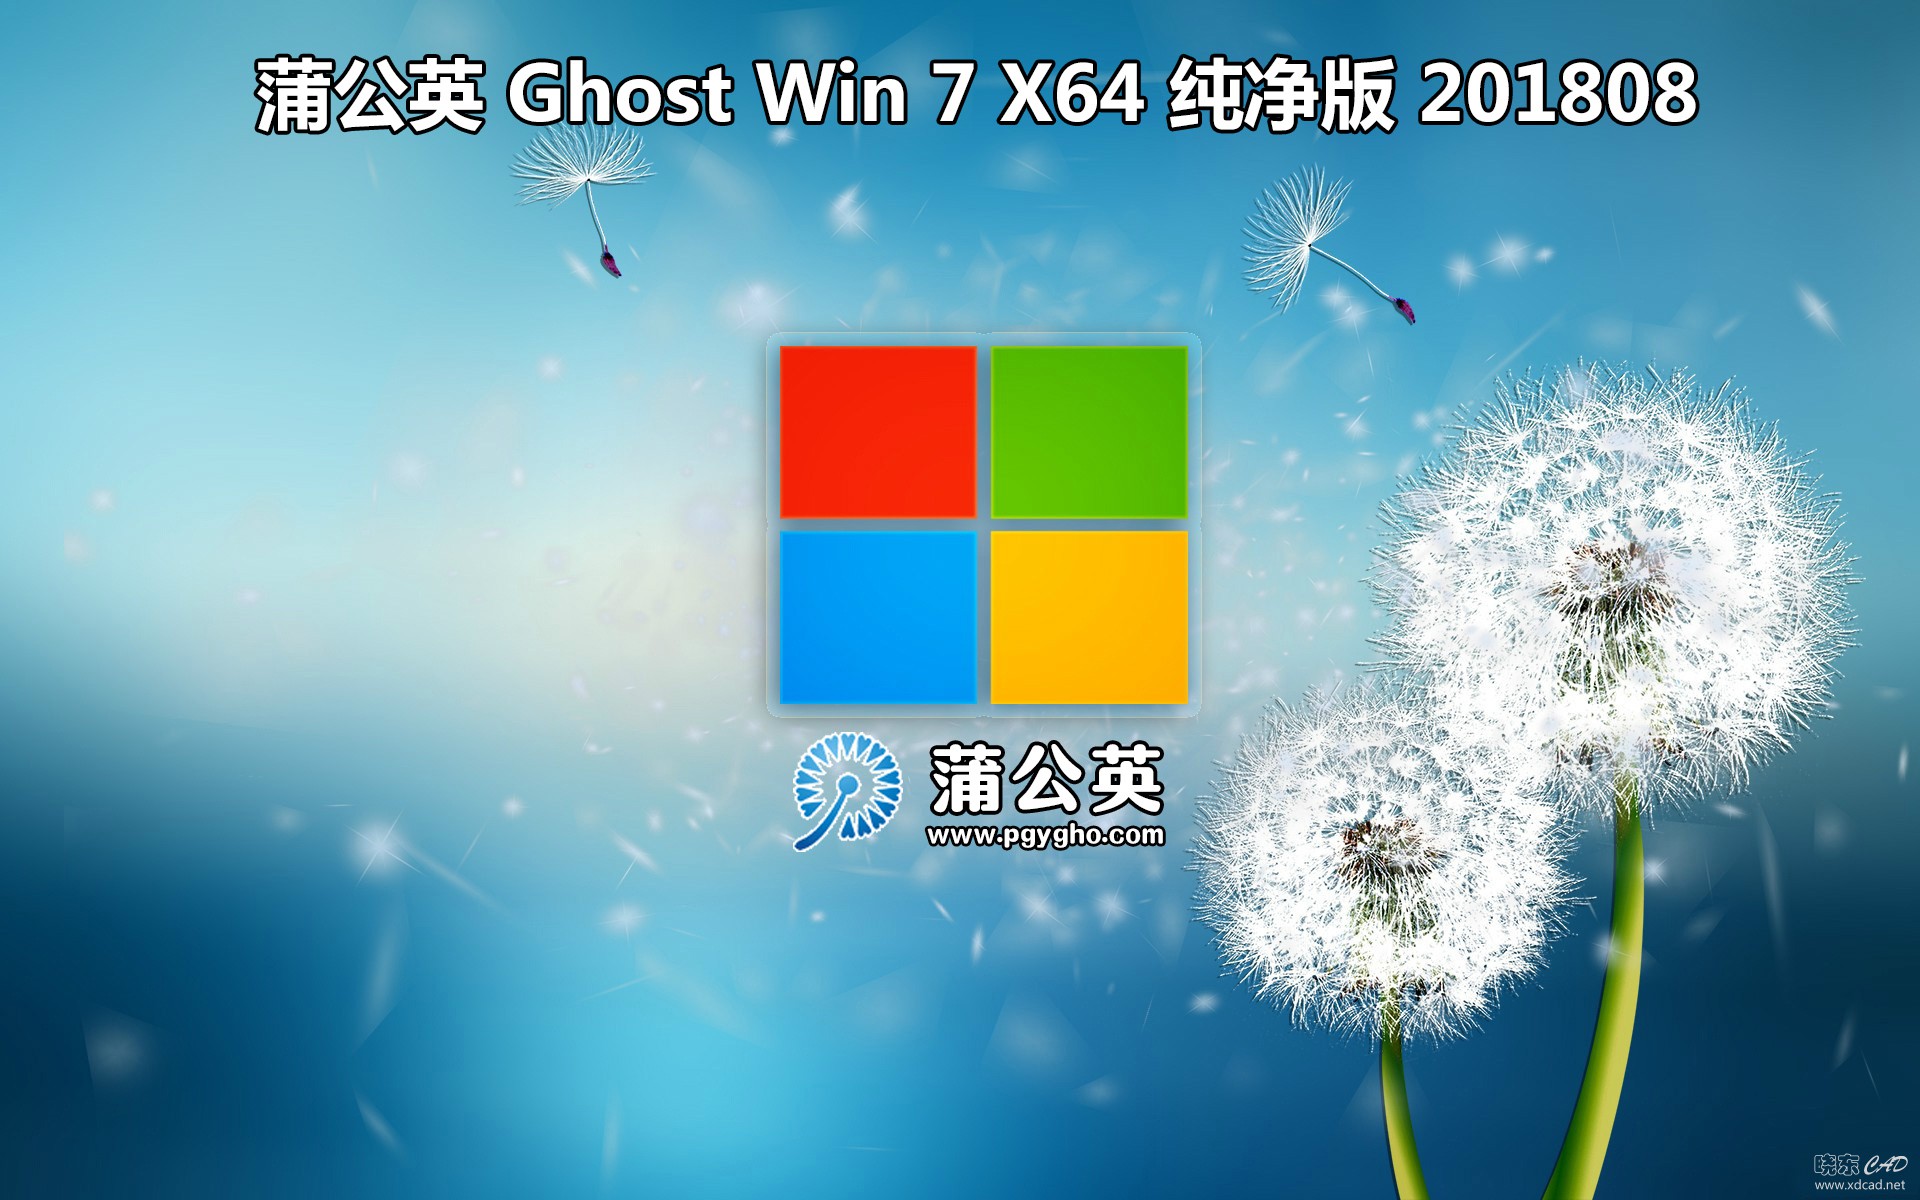 蒲公英 Ghost Win 7 Sp1（x86/x64）旗舰版 2018 08-1.jpg